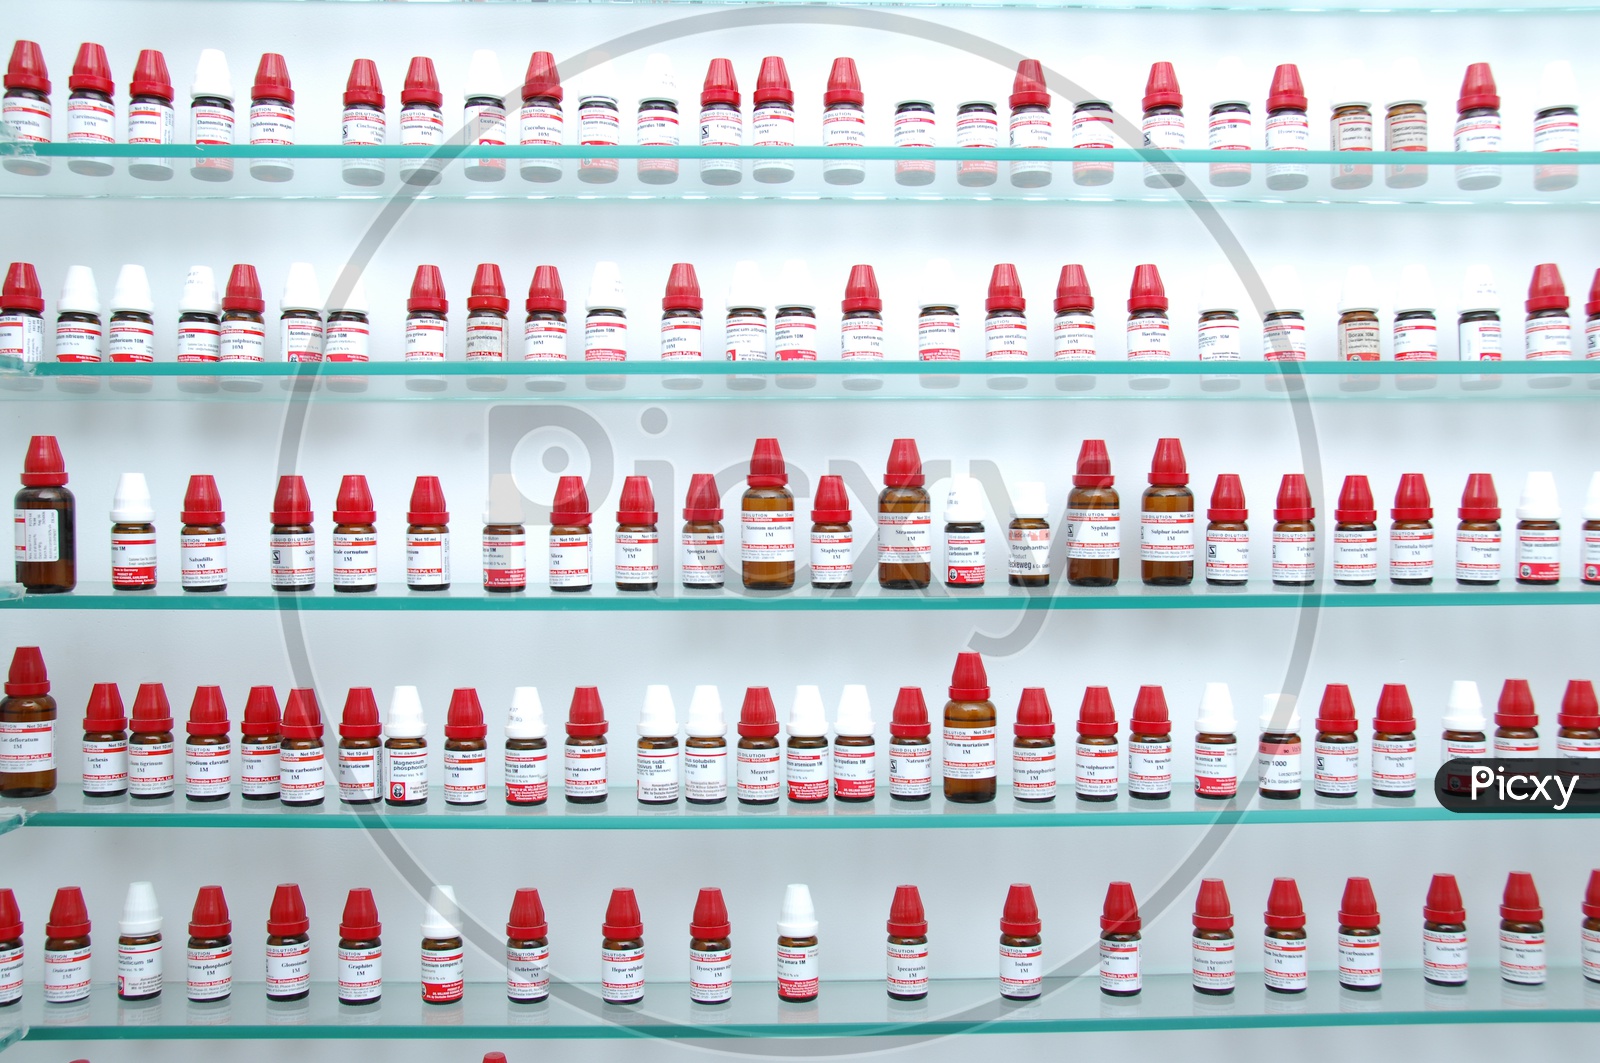 Homeopathy Medicine Bottles in Racks In Pharmacy